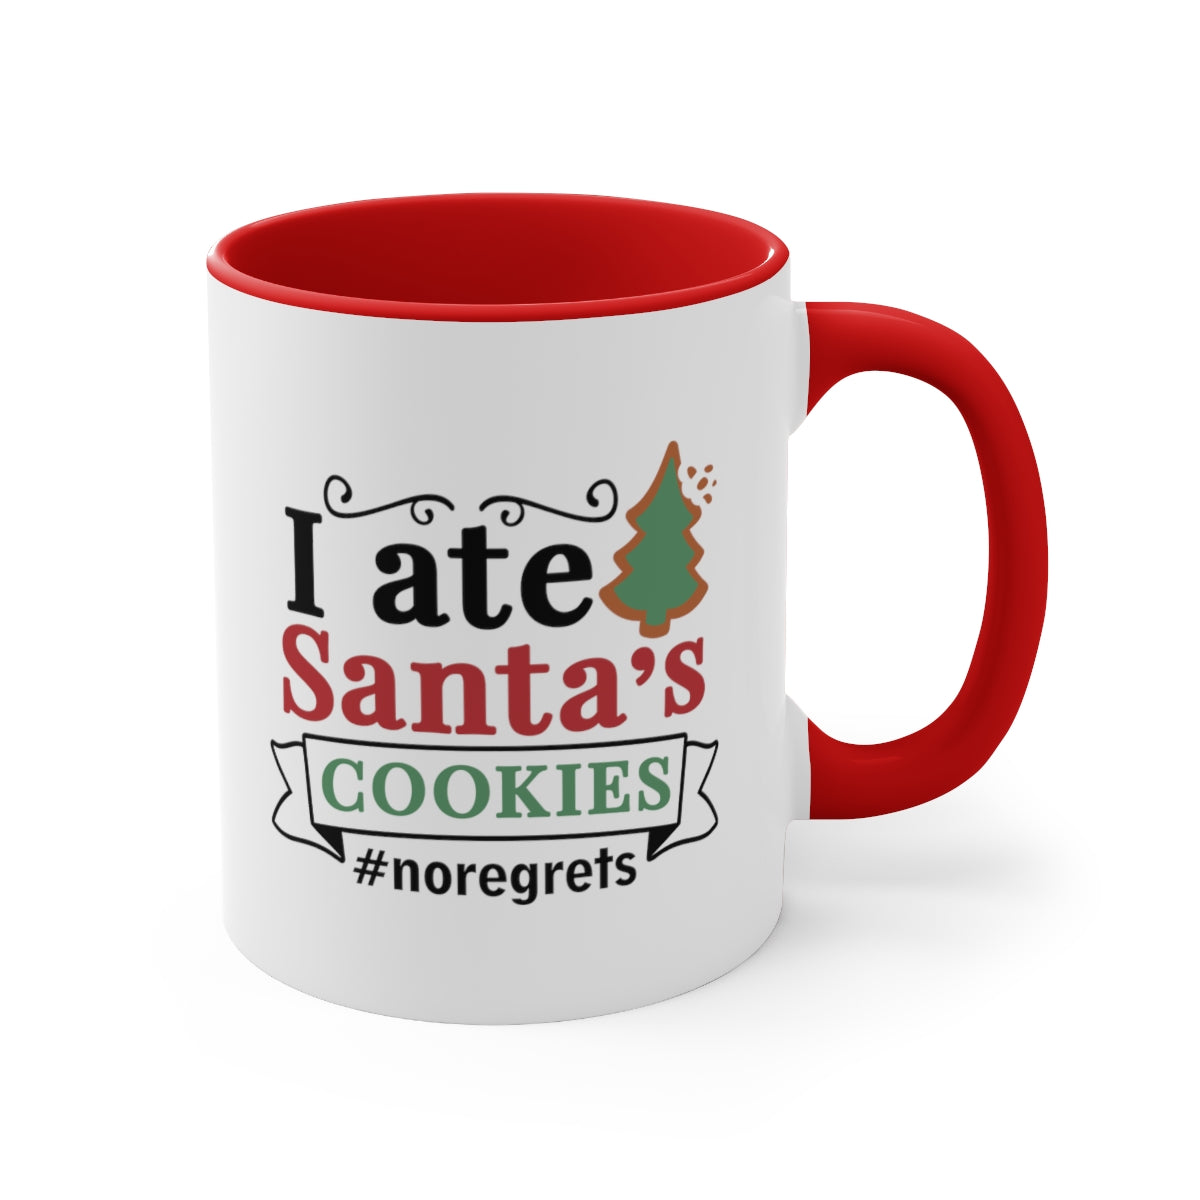 I ate Santa's Cookies | Christmas Mug